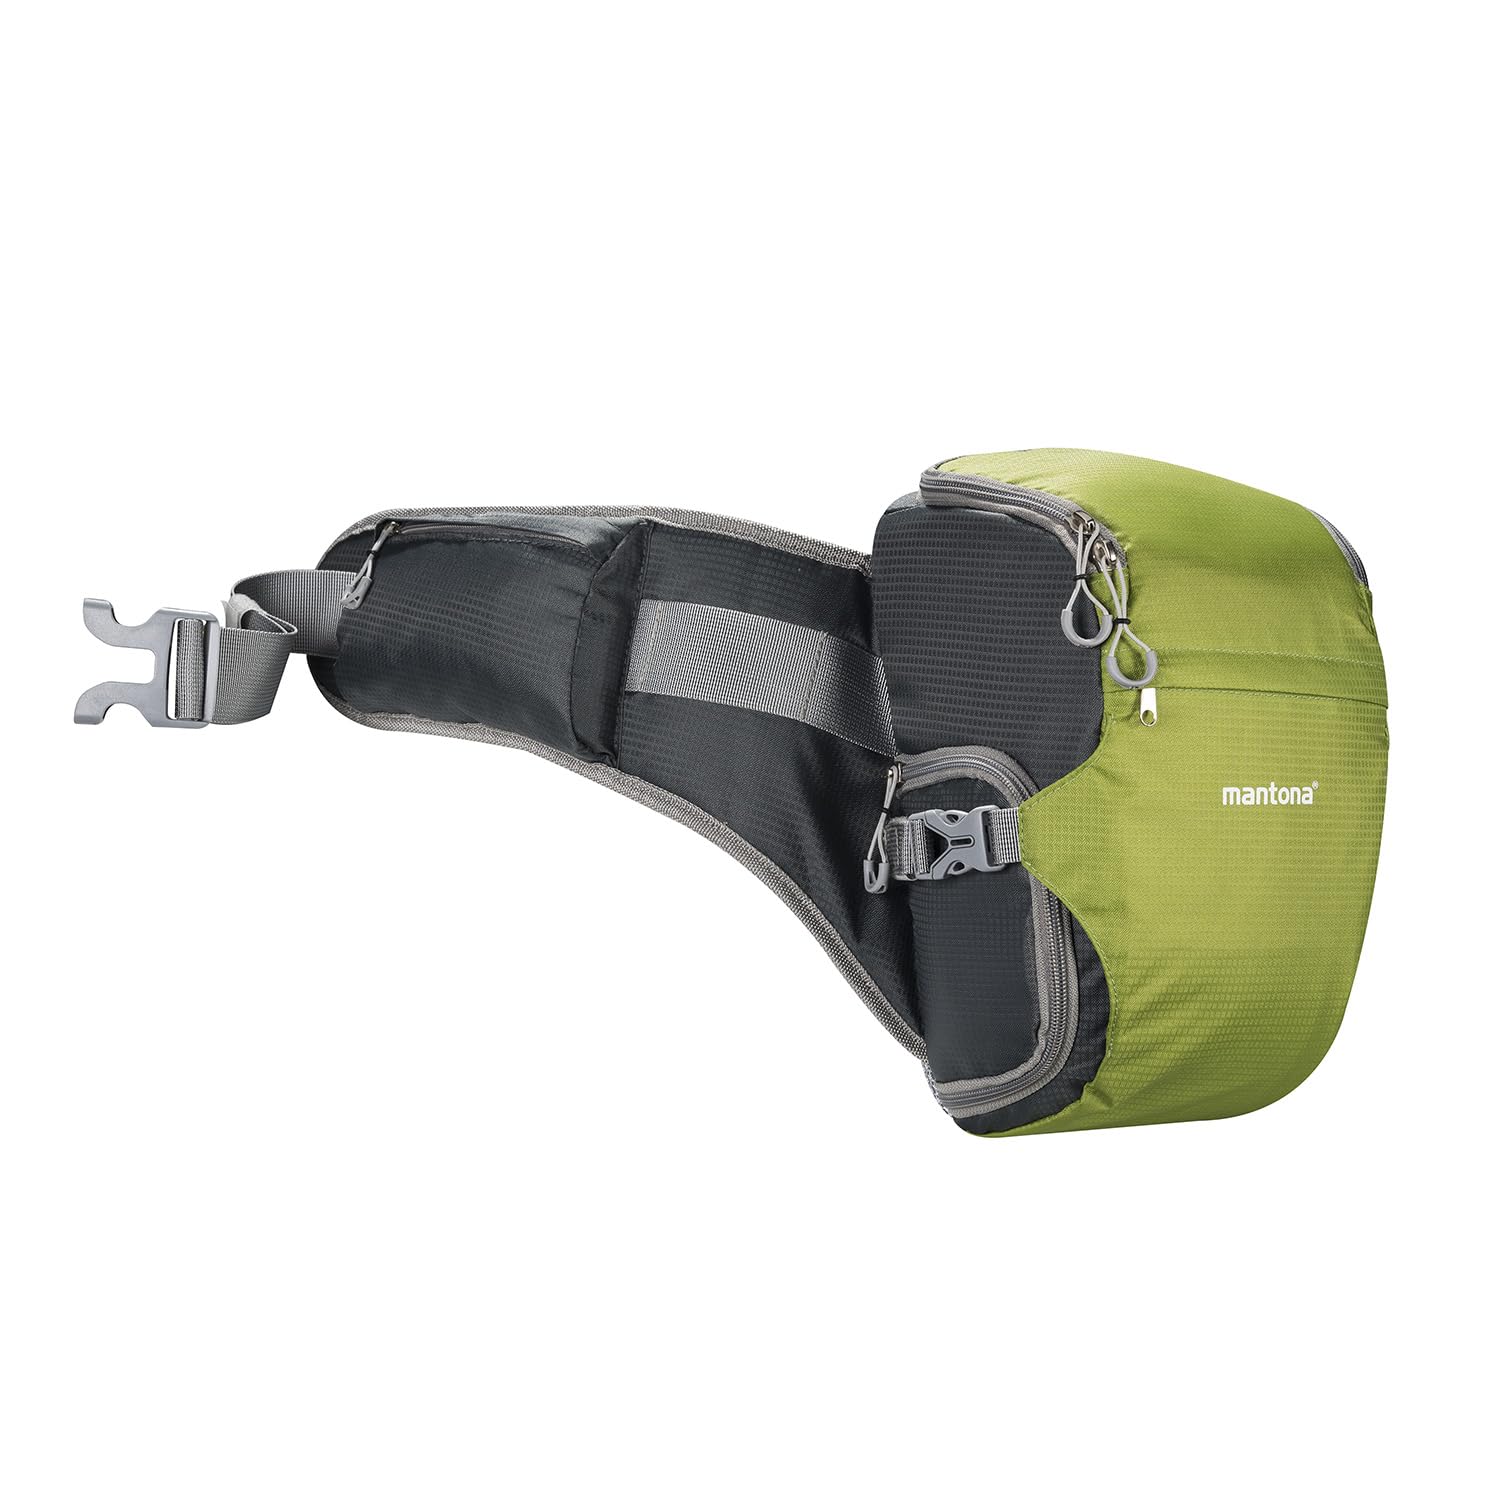 Mantona elementsPro 10 grün - Kameratasche für Outdoor Fotografen mit Hüftgurt, atmungsaktiver Polsterung und Regenhülle - kompakt und leicht - für DSLR oder Systemkamera mit Zubehör